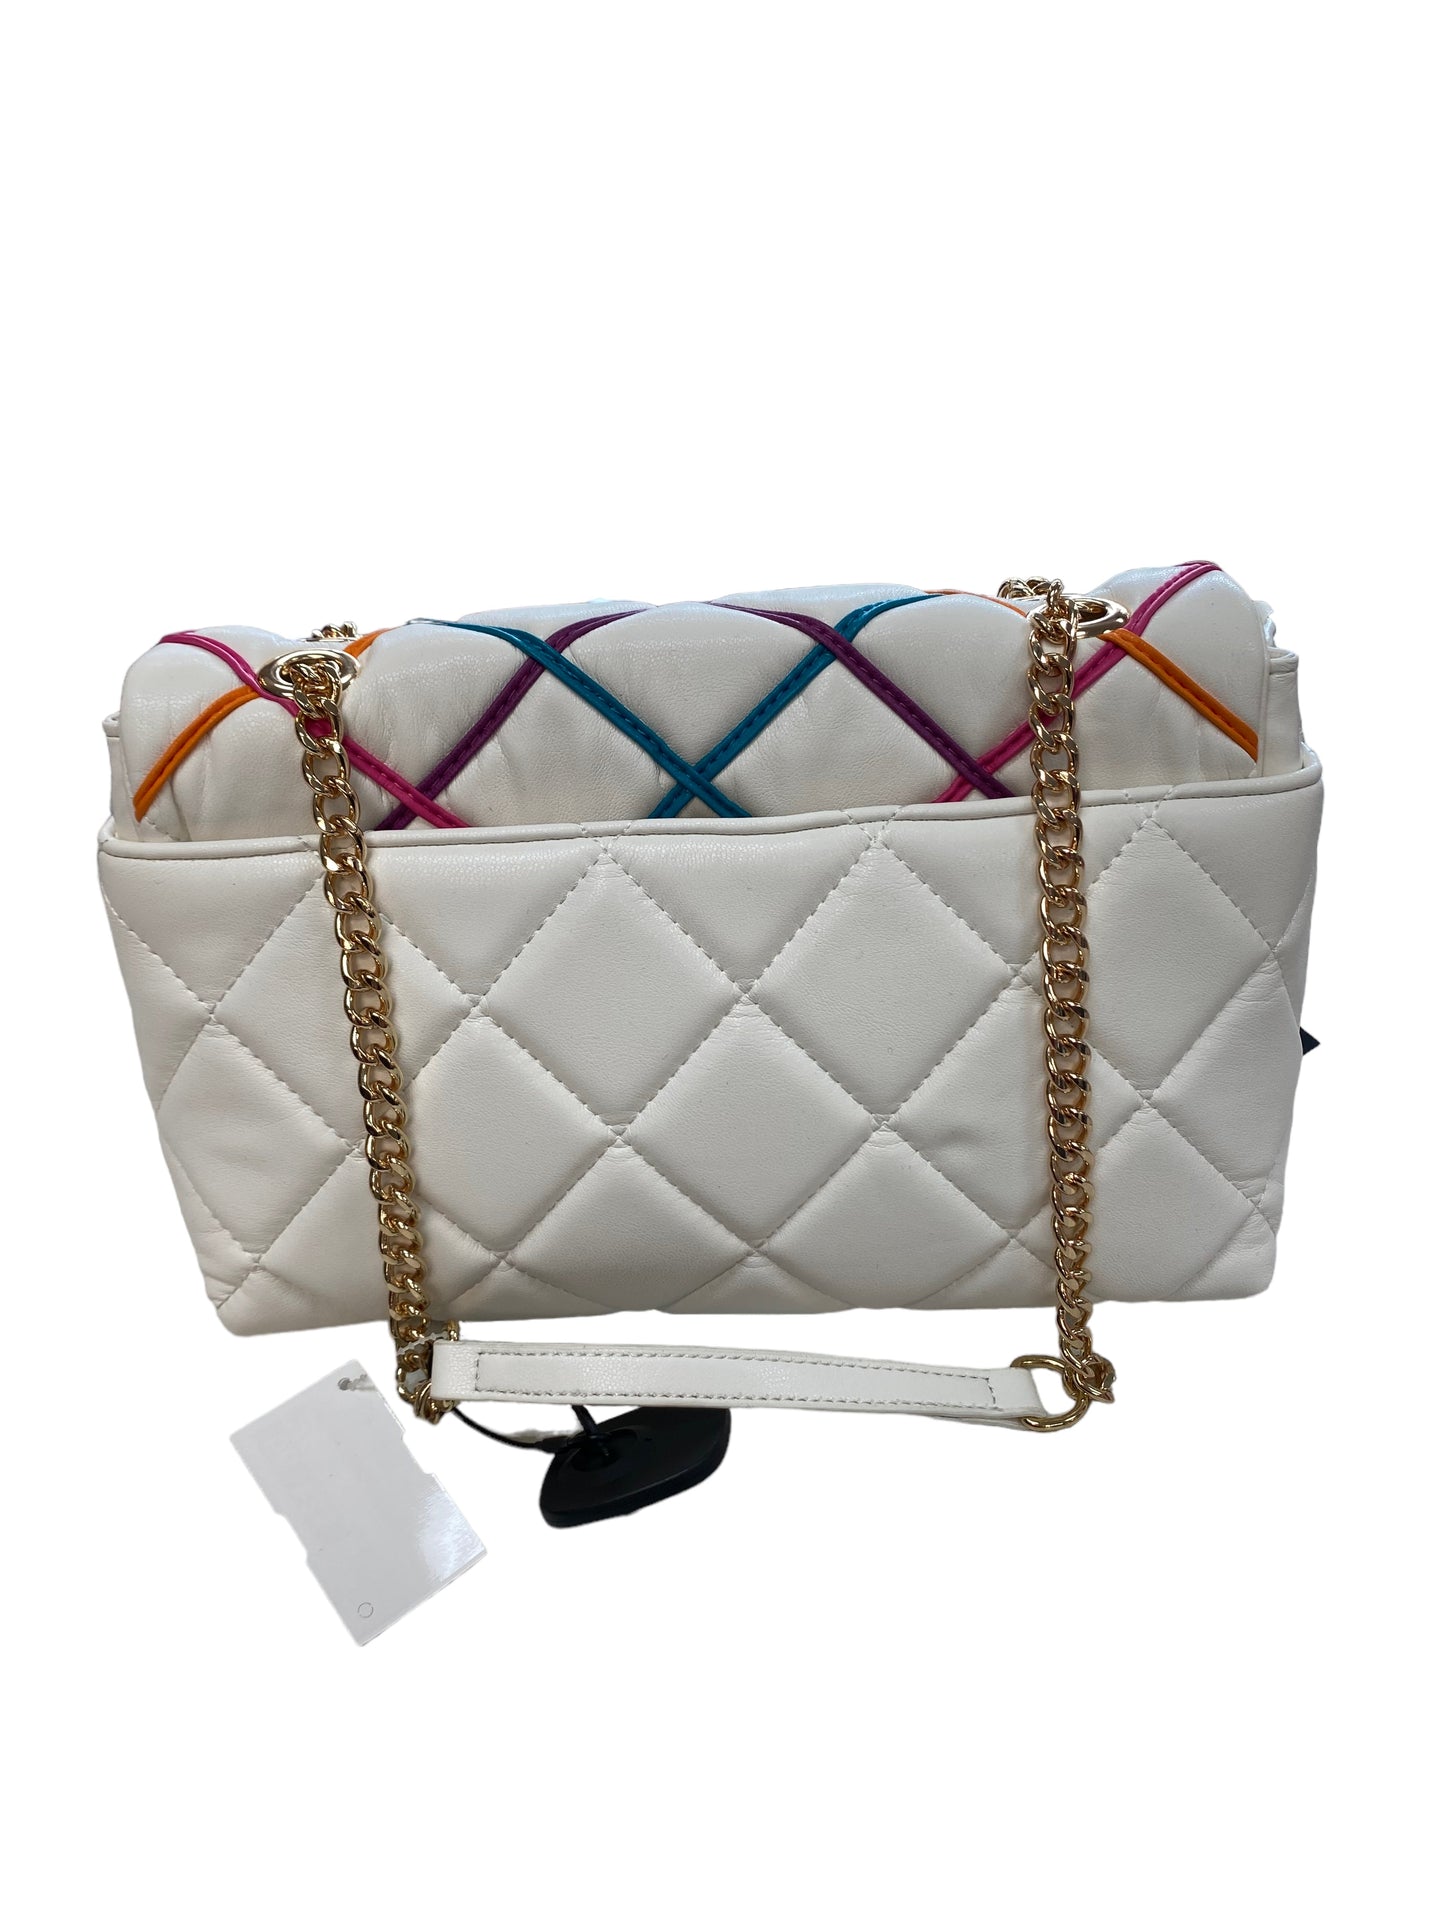 Handbag Inc, Size Medium